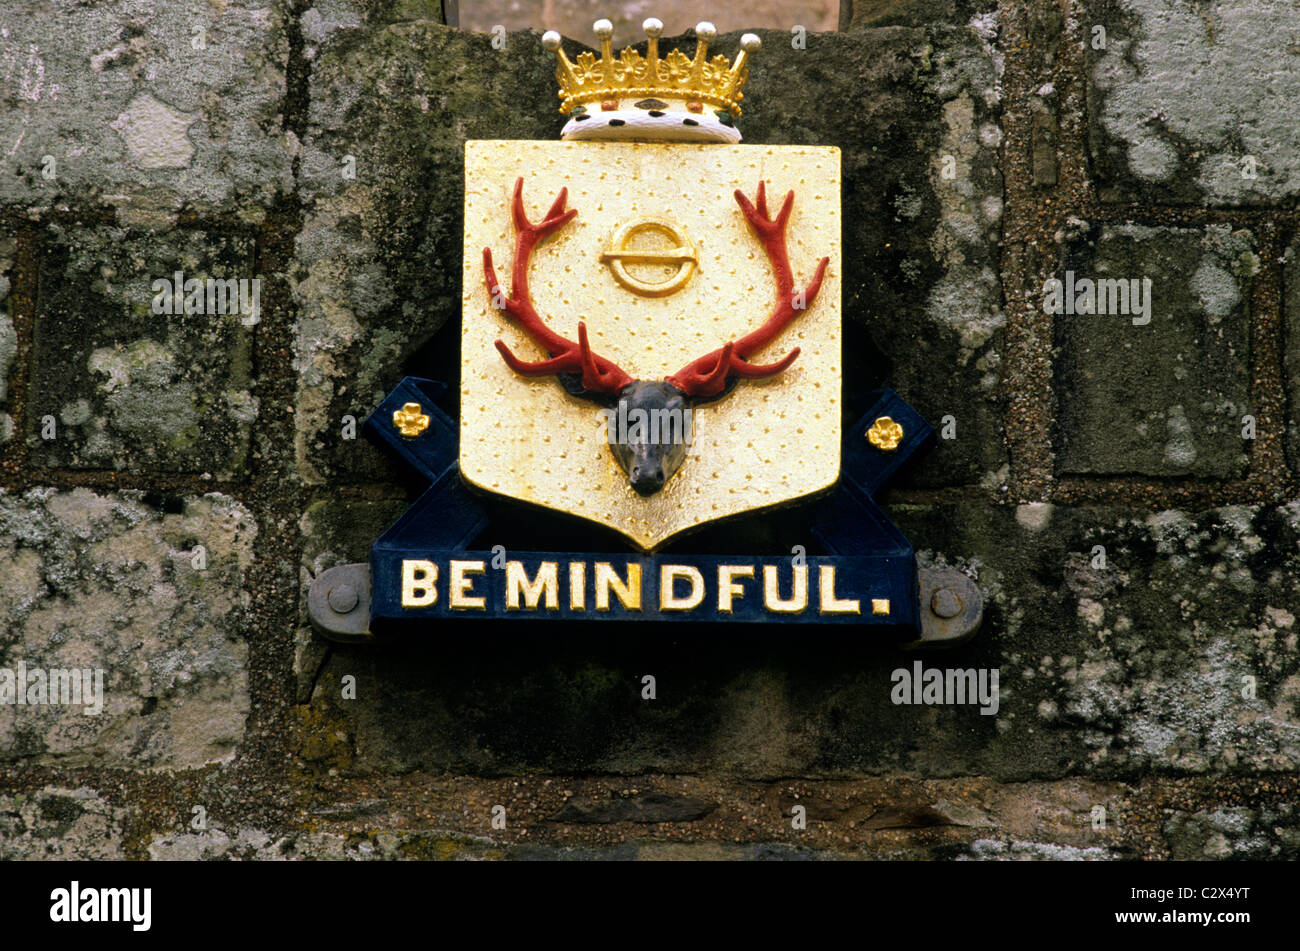 Le Château de Cawdor, armoiries, stag's head, 'l'esprit' devise, Écosse châteaux médiévaux UK stag Banque D'Images